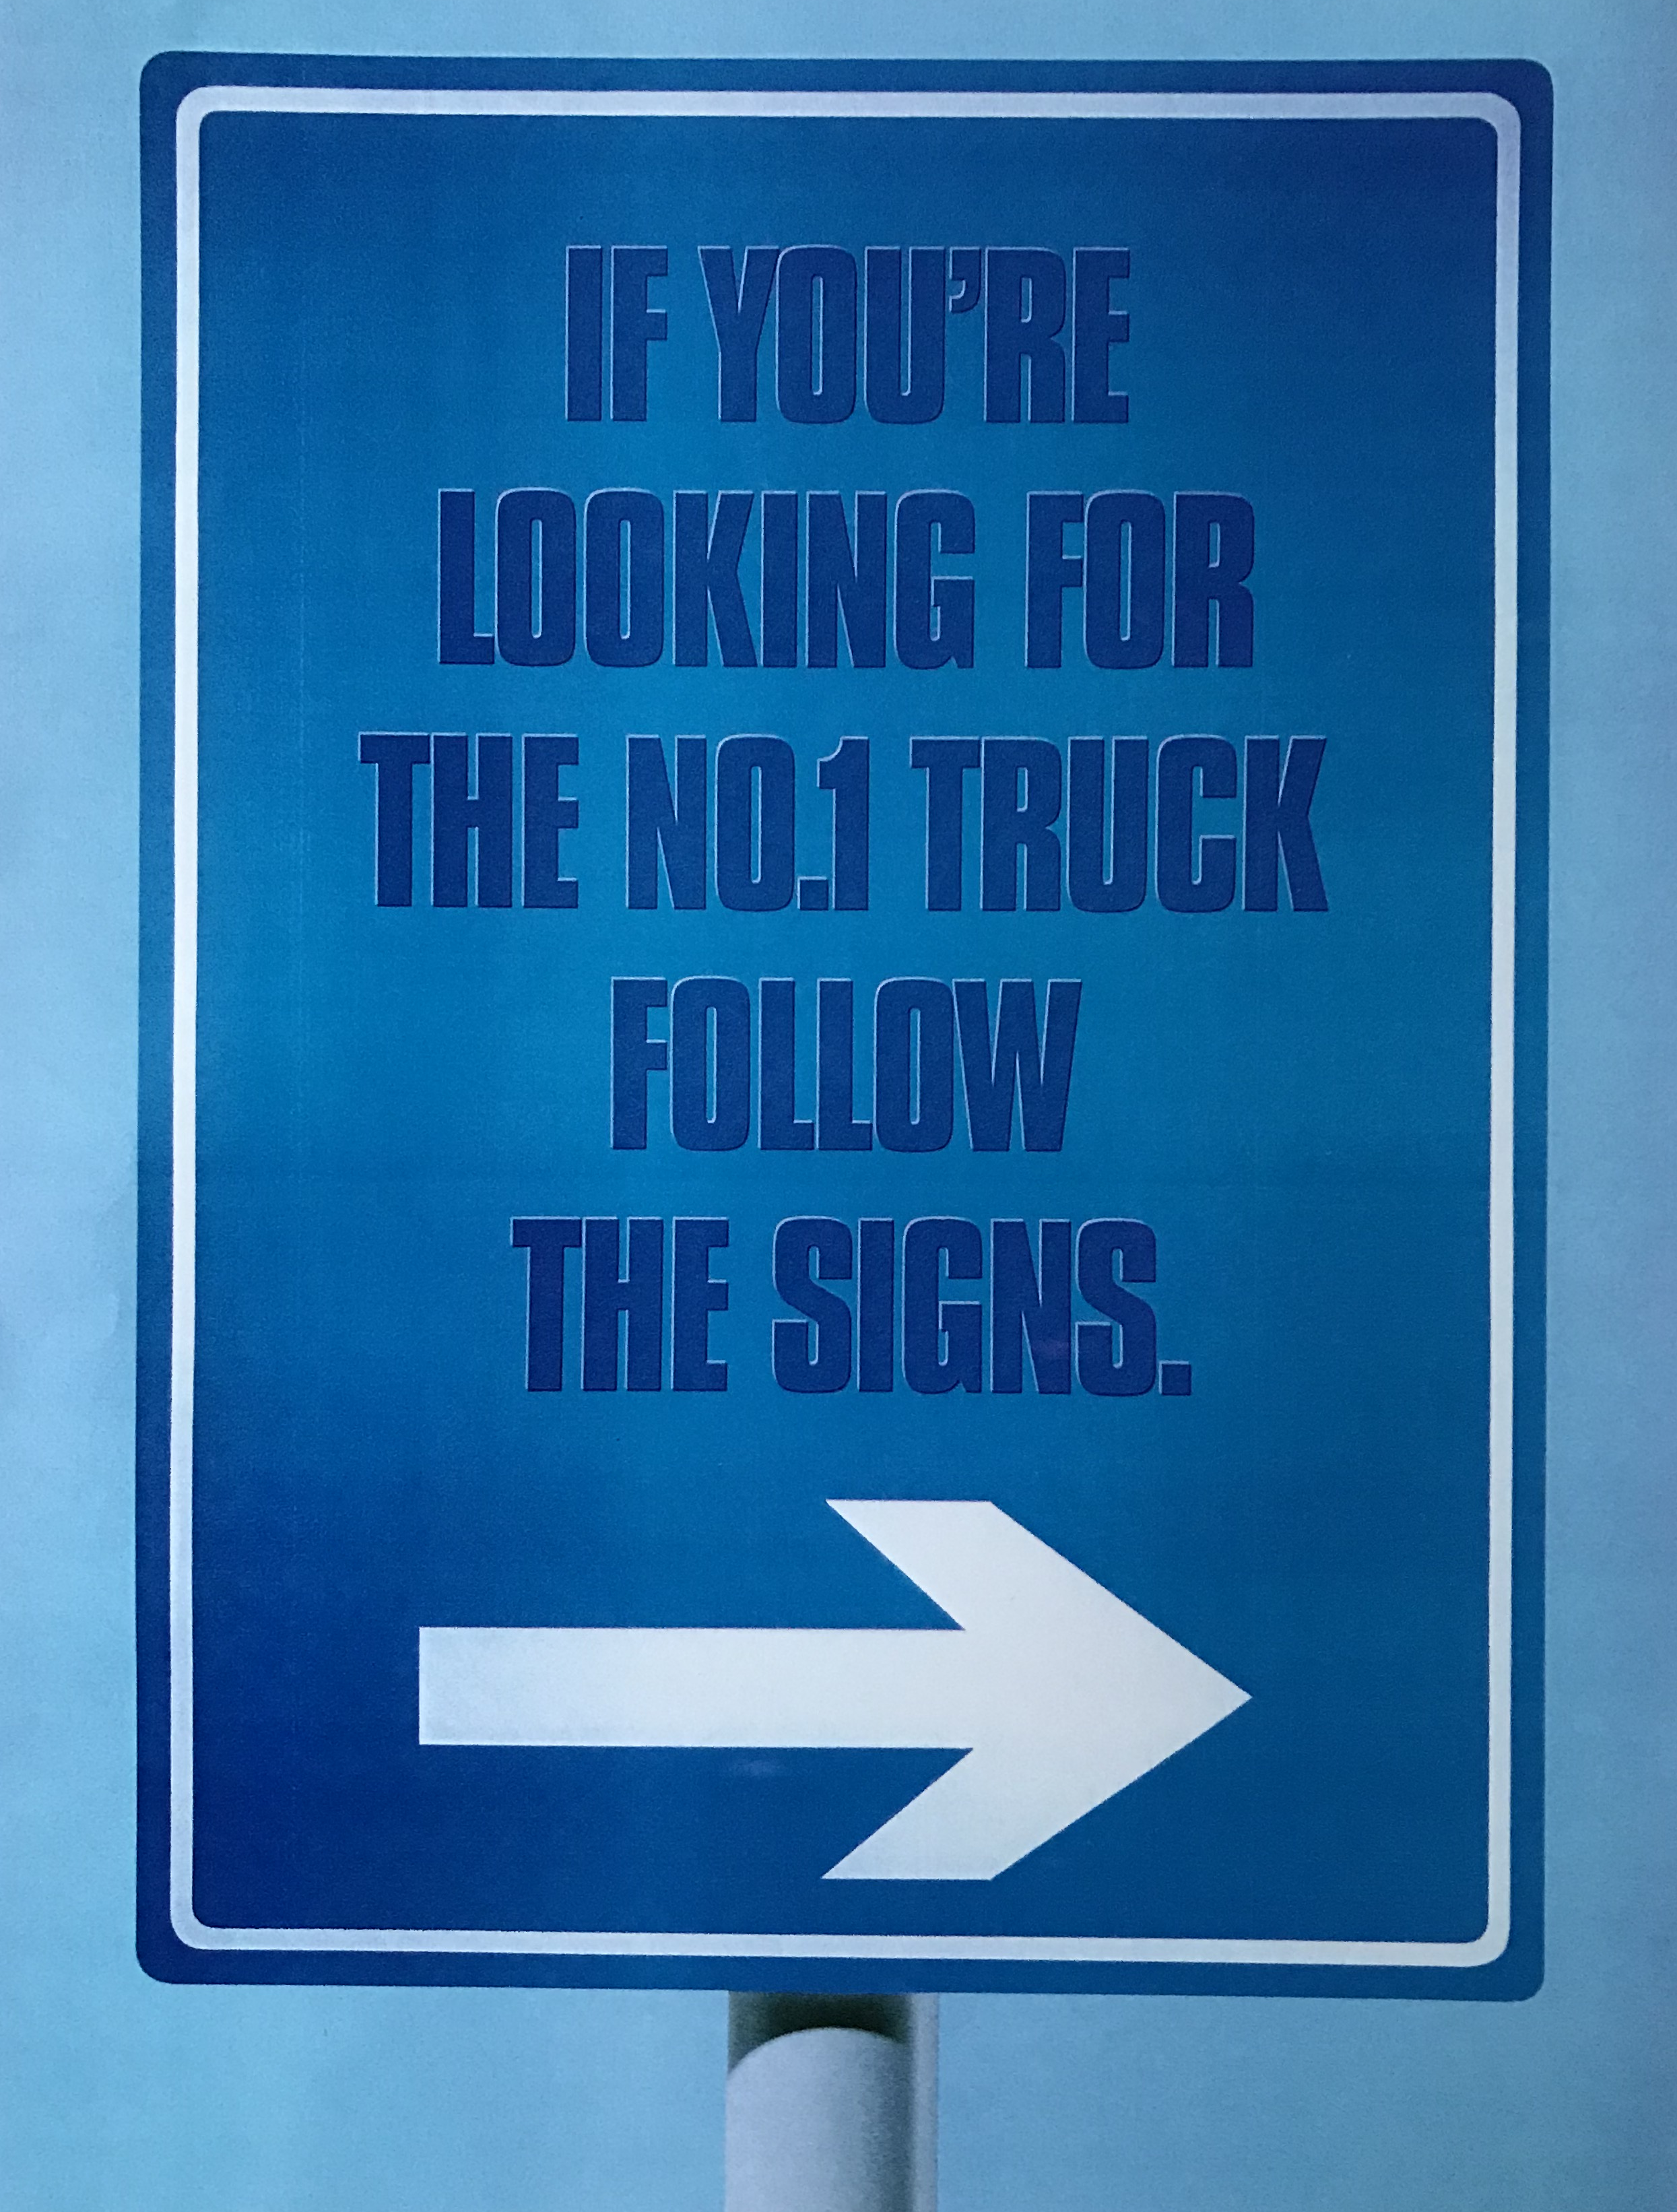 Iveco Trucks press advertisement copy